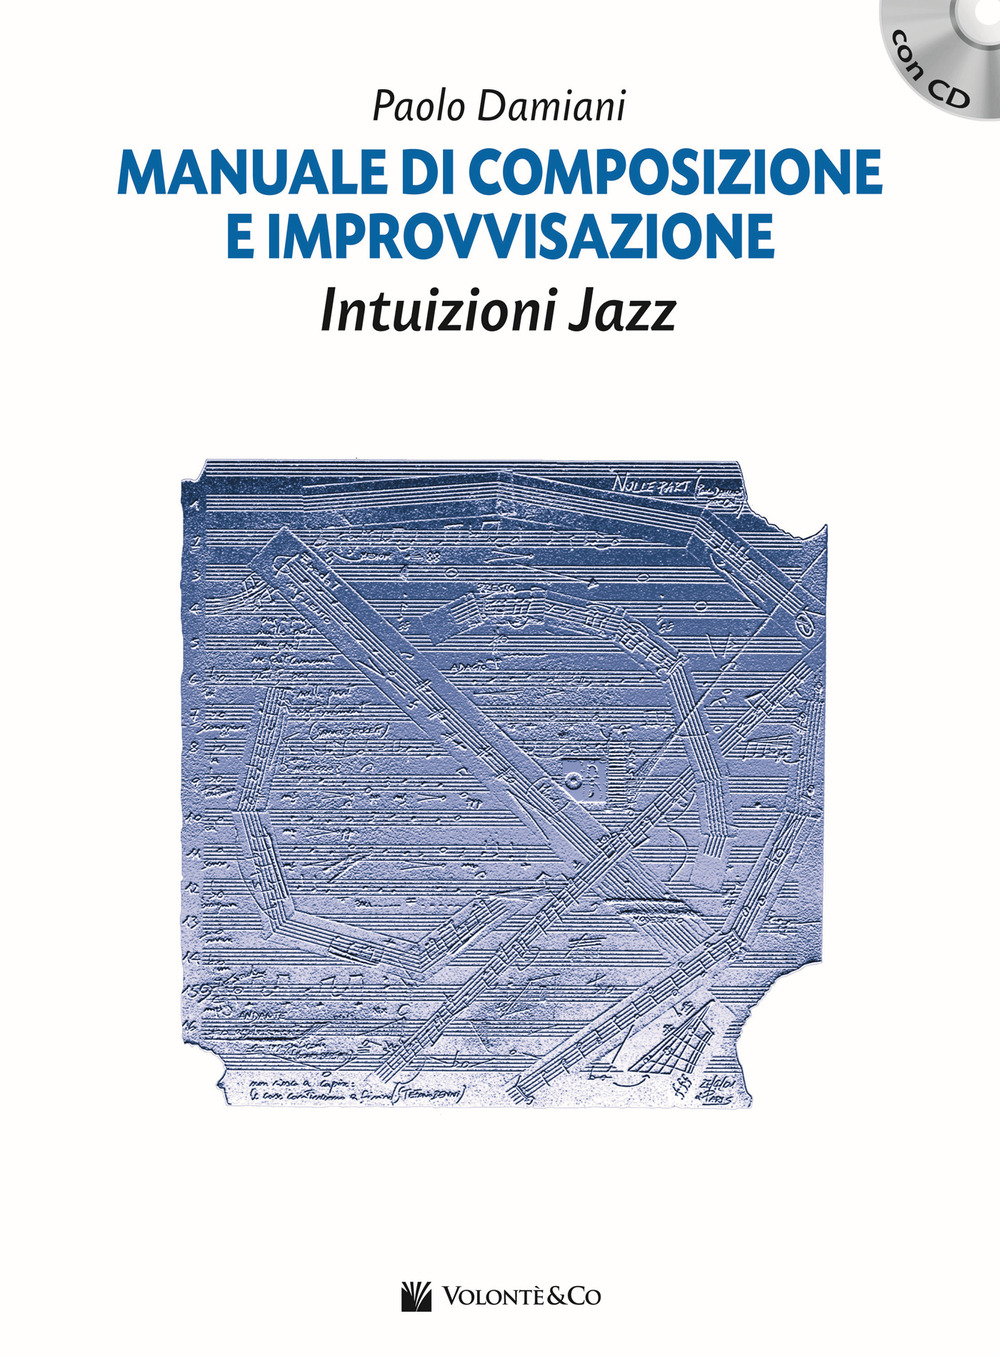 Manuale di composizione e improvvisazione intuizioni jazz. Con CD Audio